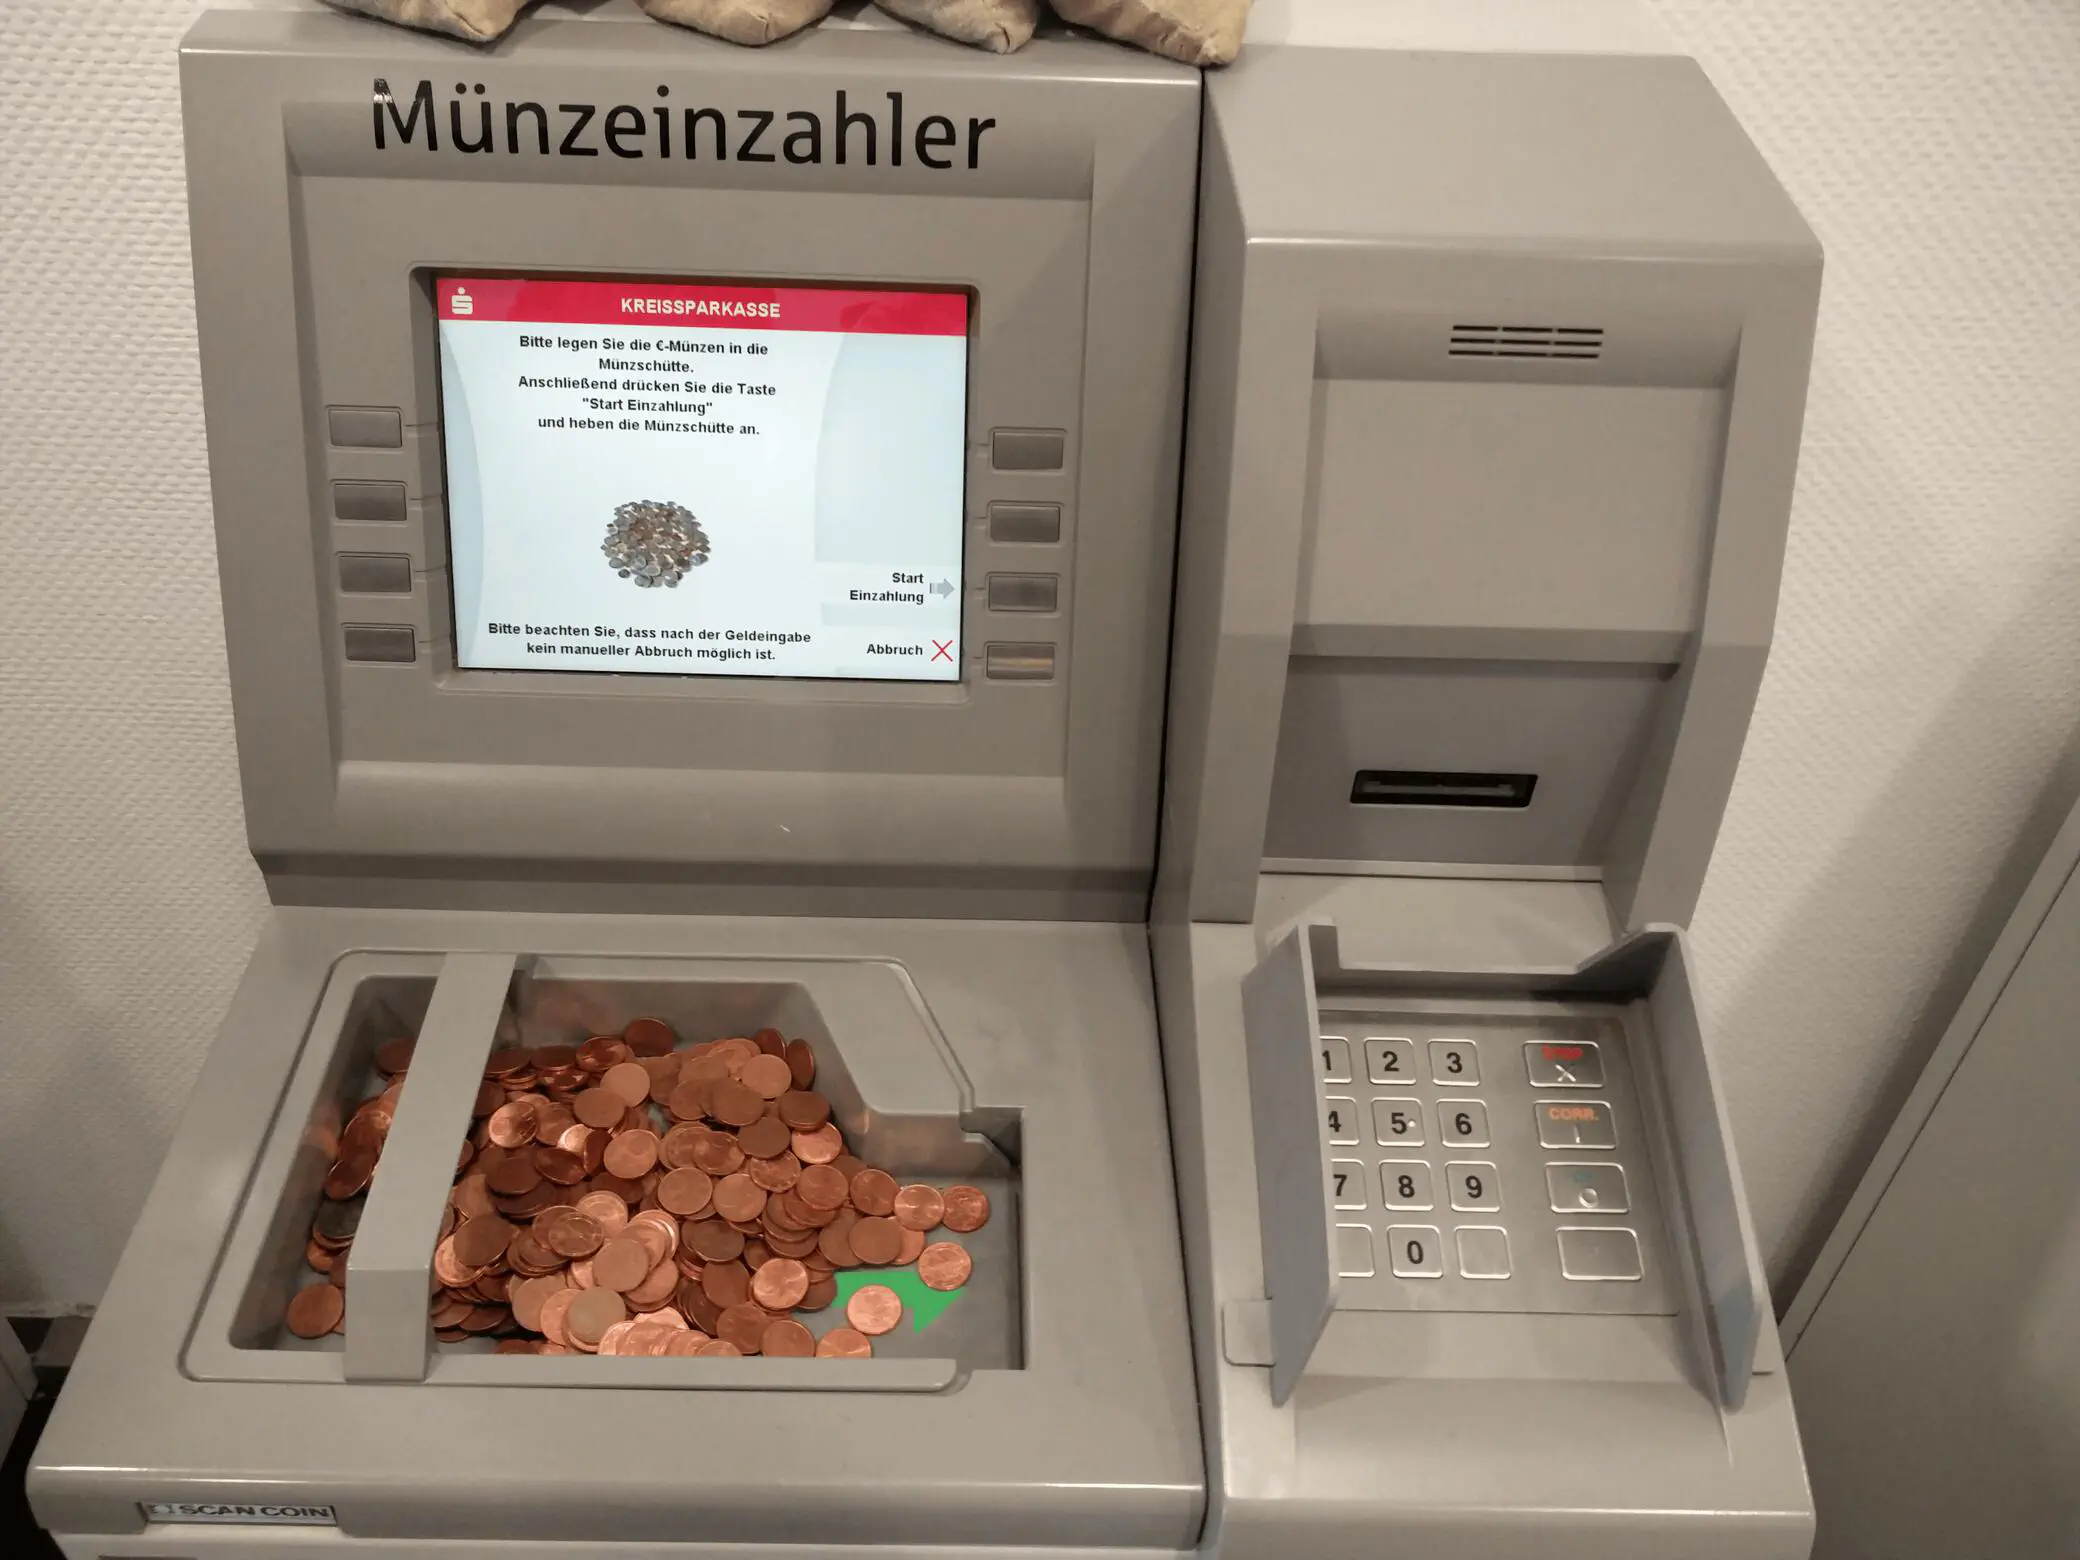 Bild eines Münzeinzahlungsgerätes